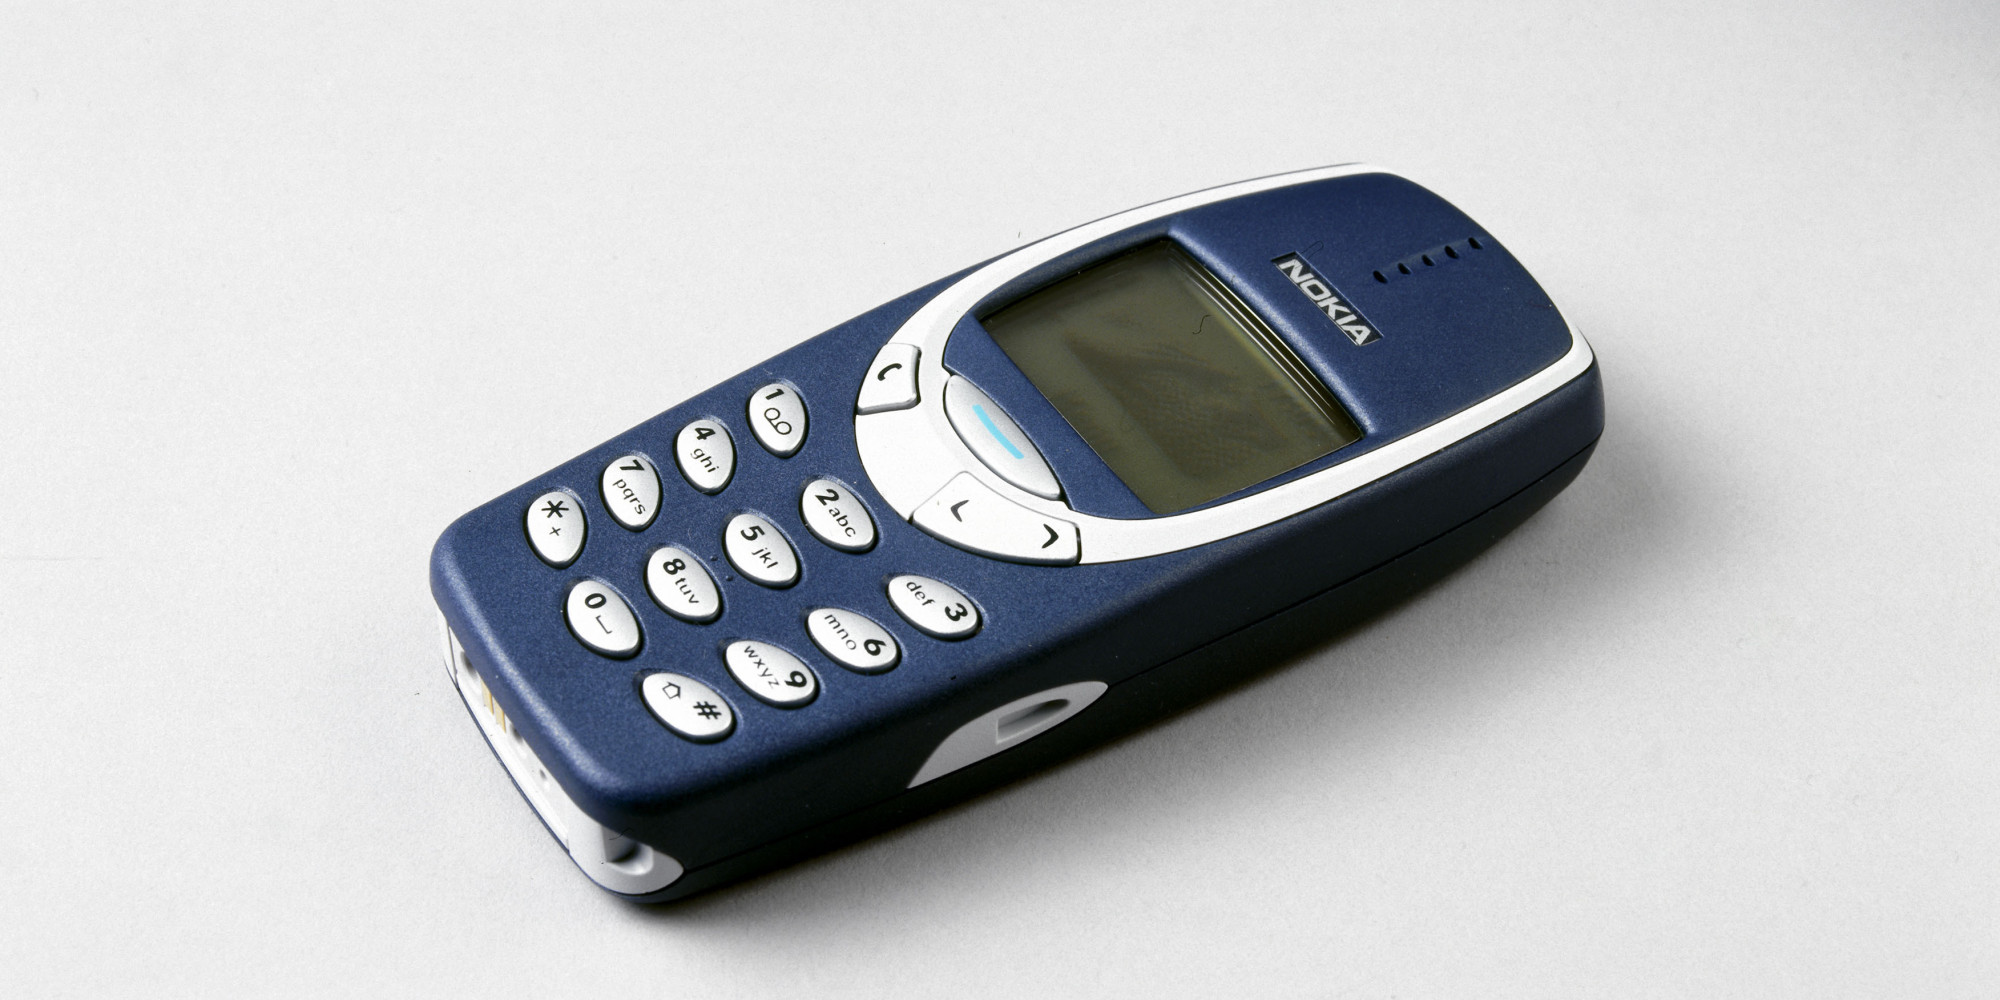 ¿Recuerdas el Nokia 3310? El esta de vuelta  blog post